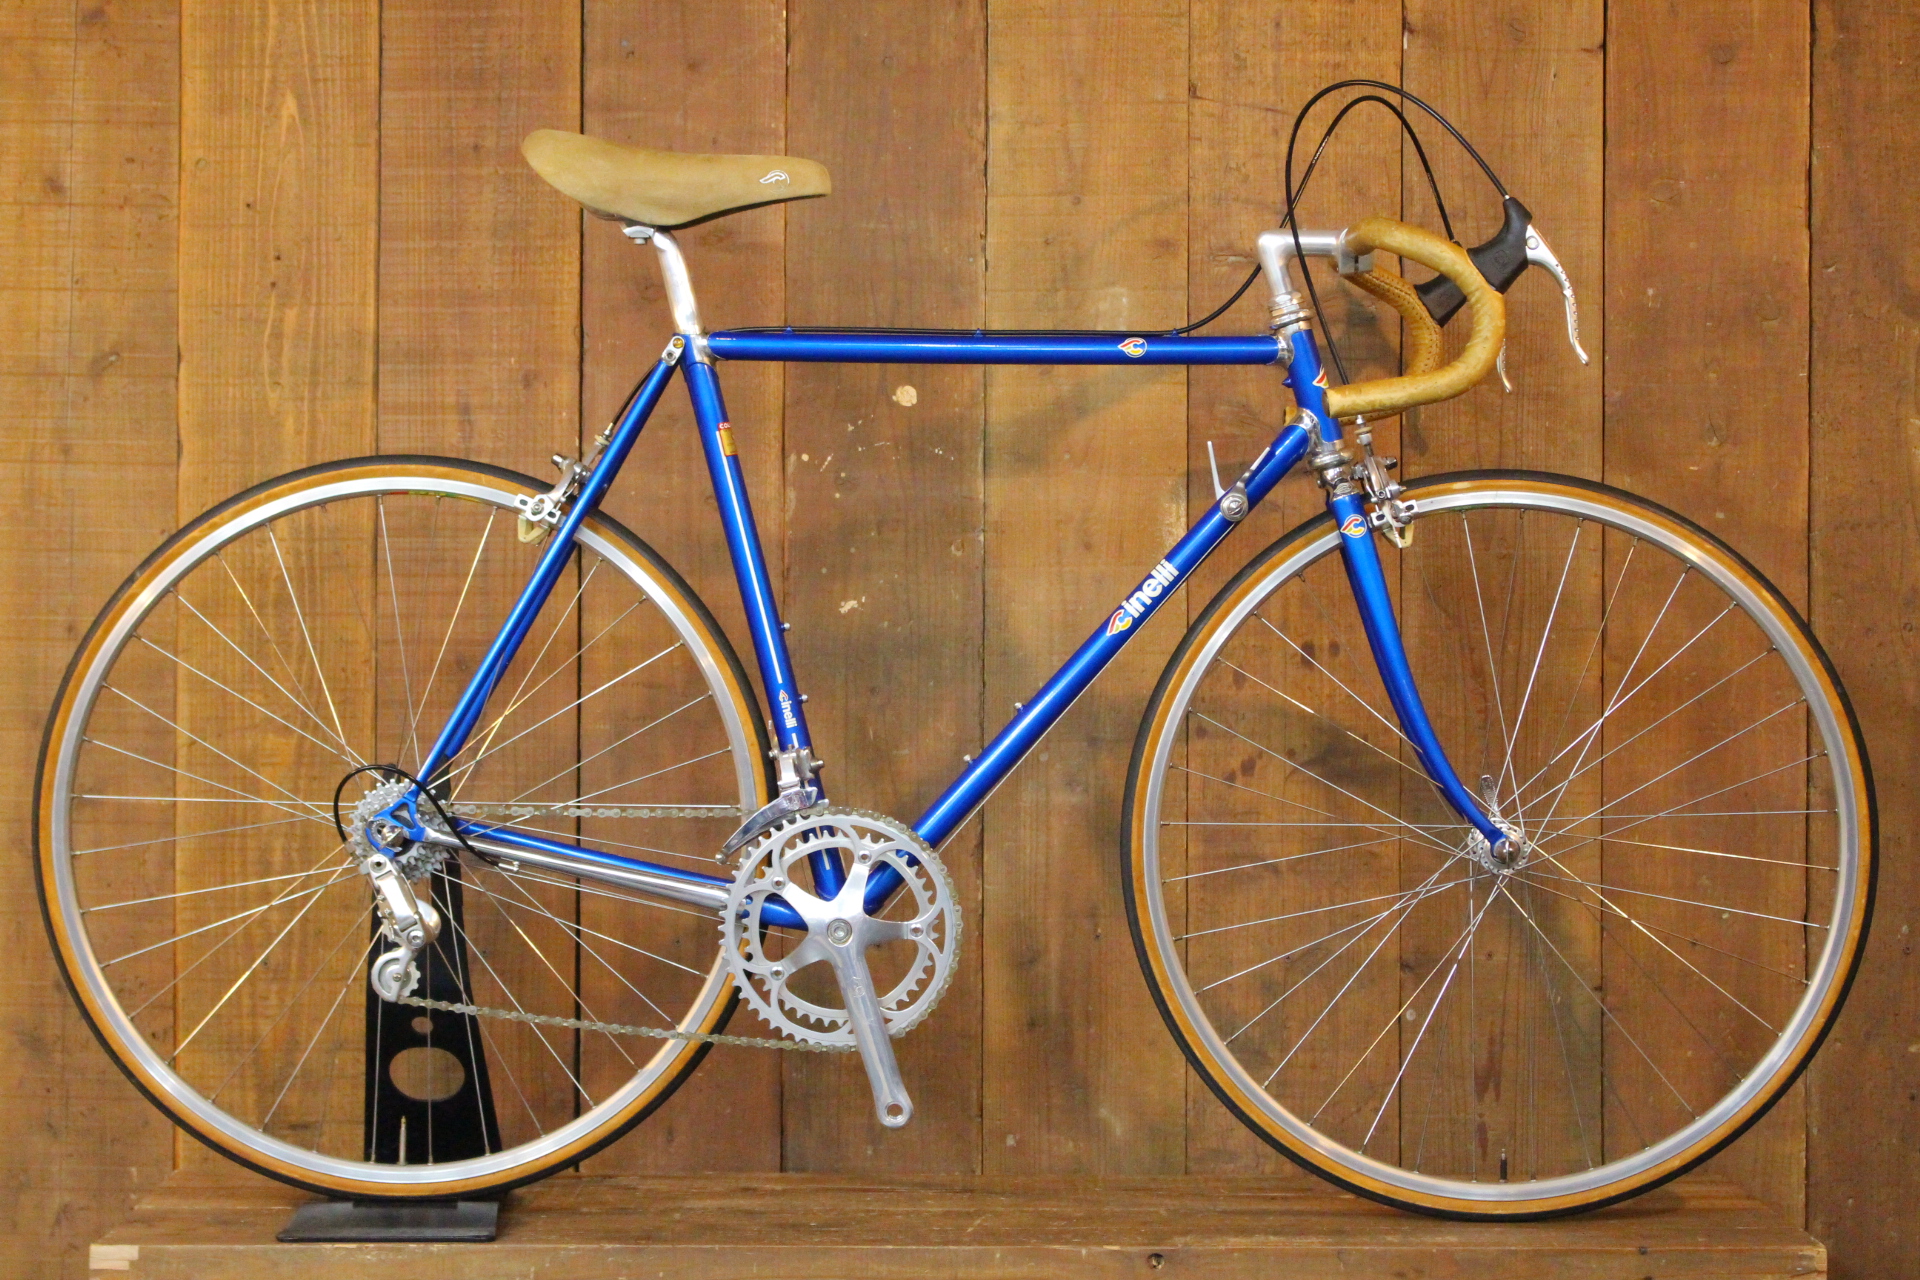 東京オリンピック1964年自転車競技写真集 カンパニョーロ - 自転車本体